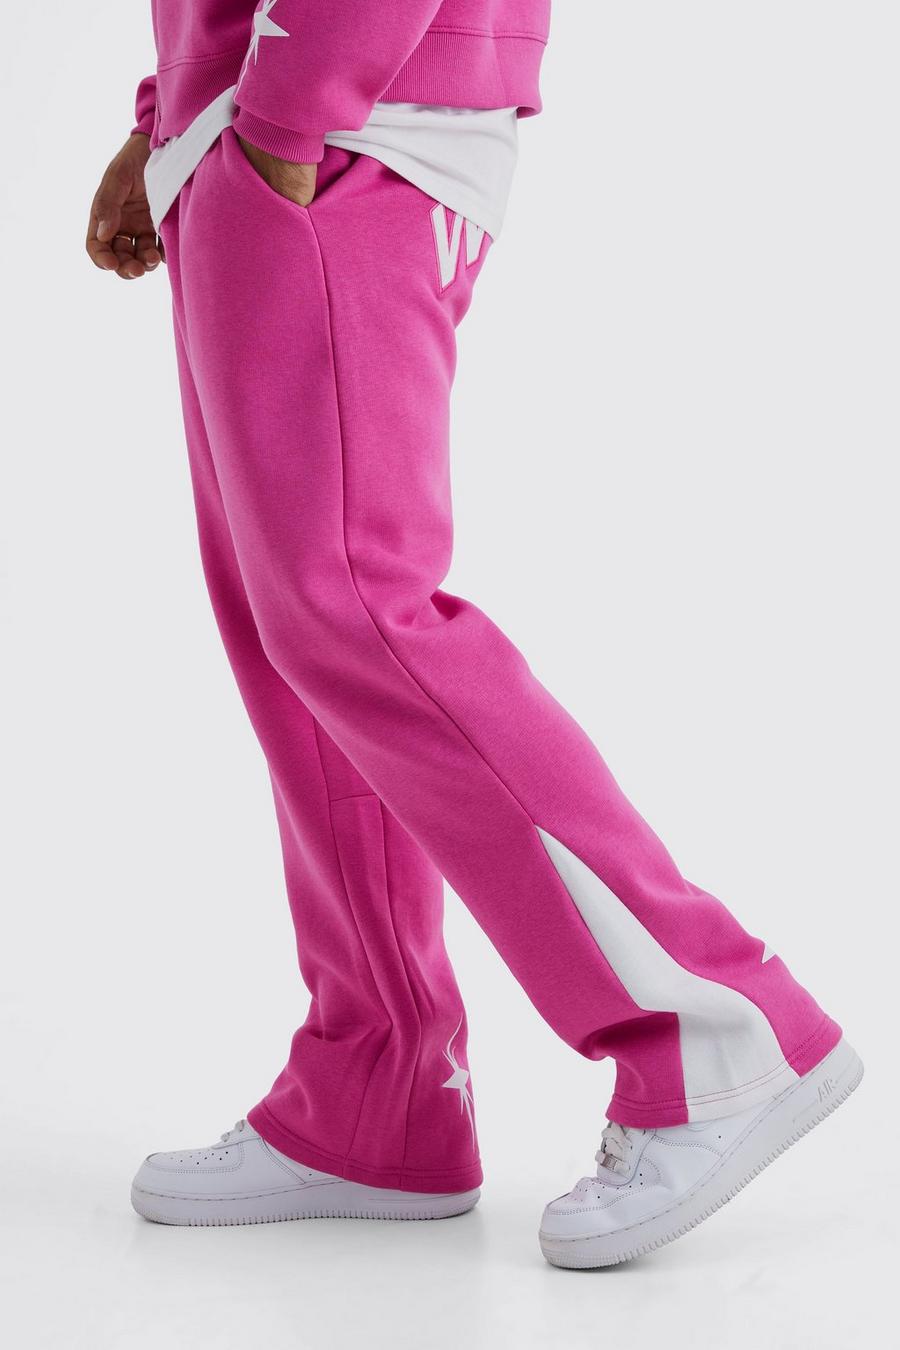 Pantaloni tuta Worldwide con inserti a stella, Pink